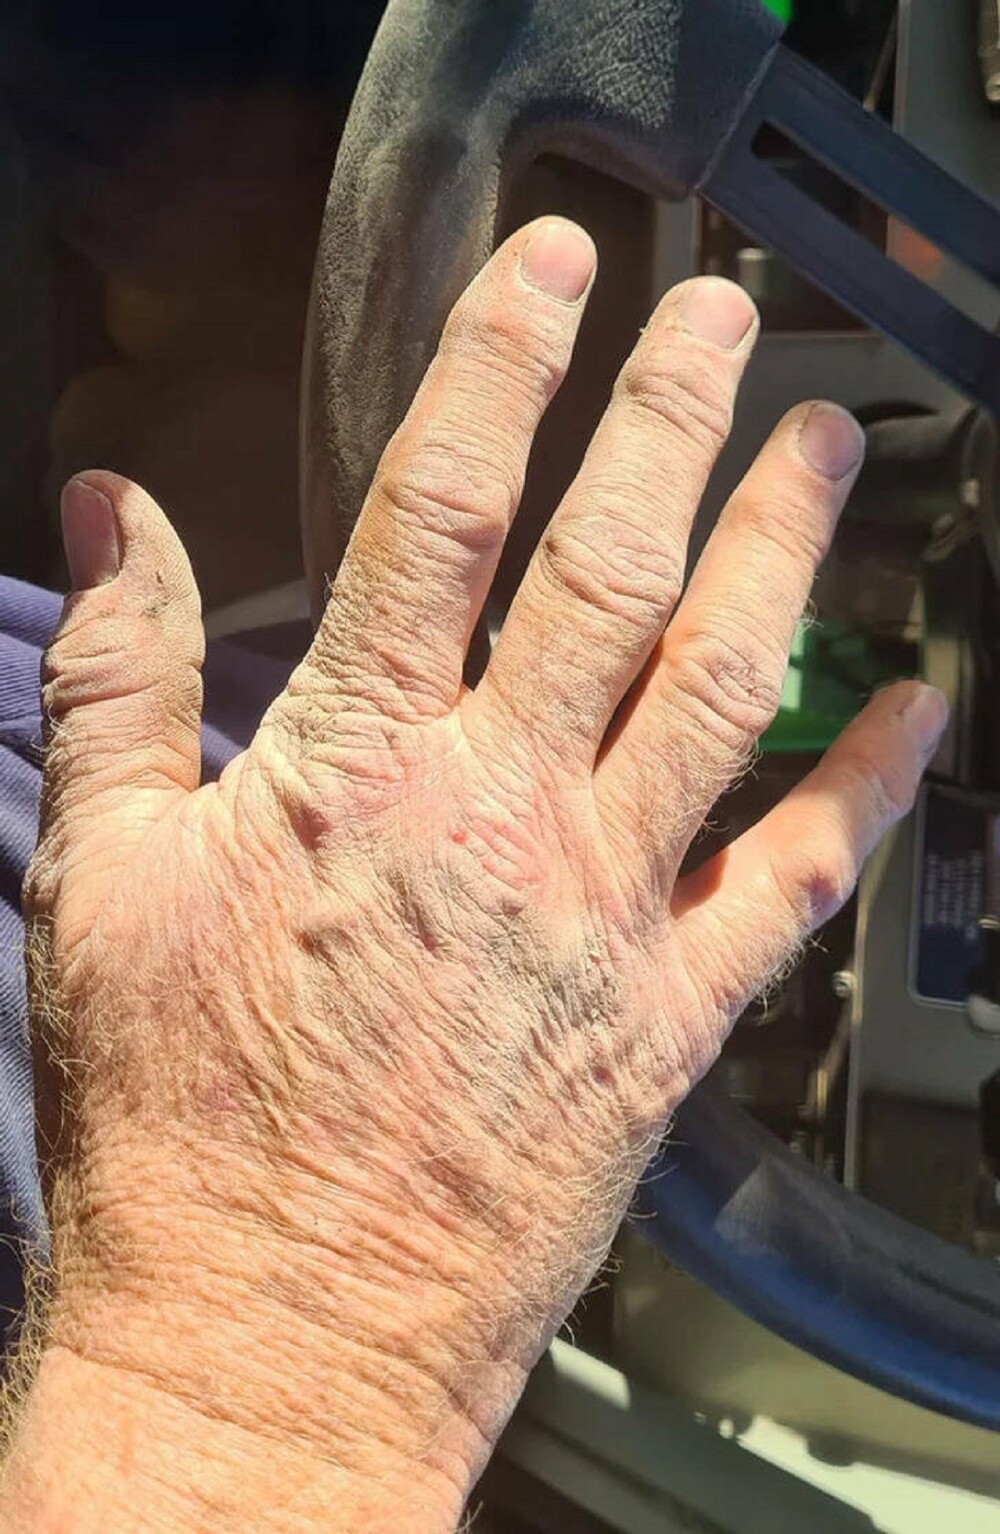 2. "Рабочие руки на цементном заводе! Я котельщик, и это моя рука после рабочего дня в грязи и пыли. Выбирайте профессию с умом, дети"